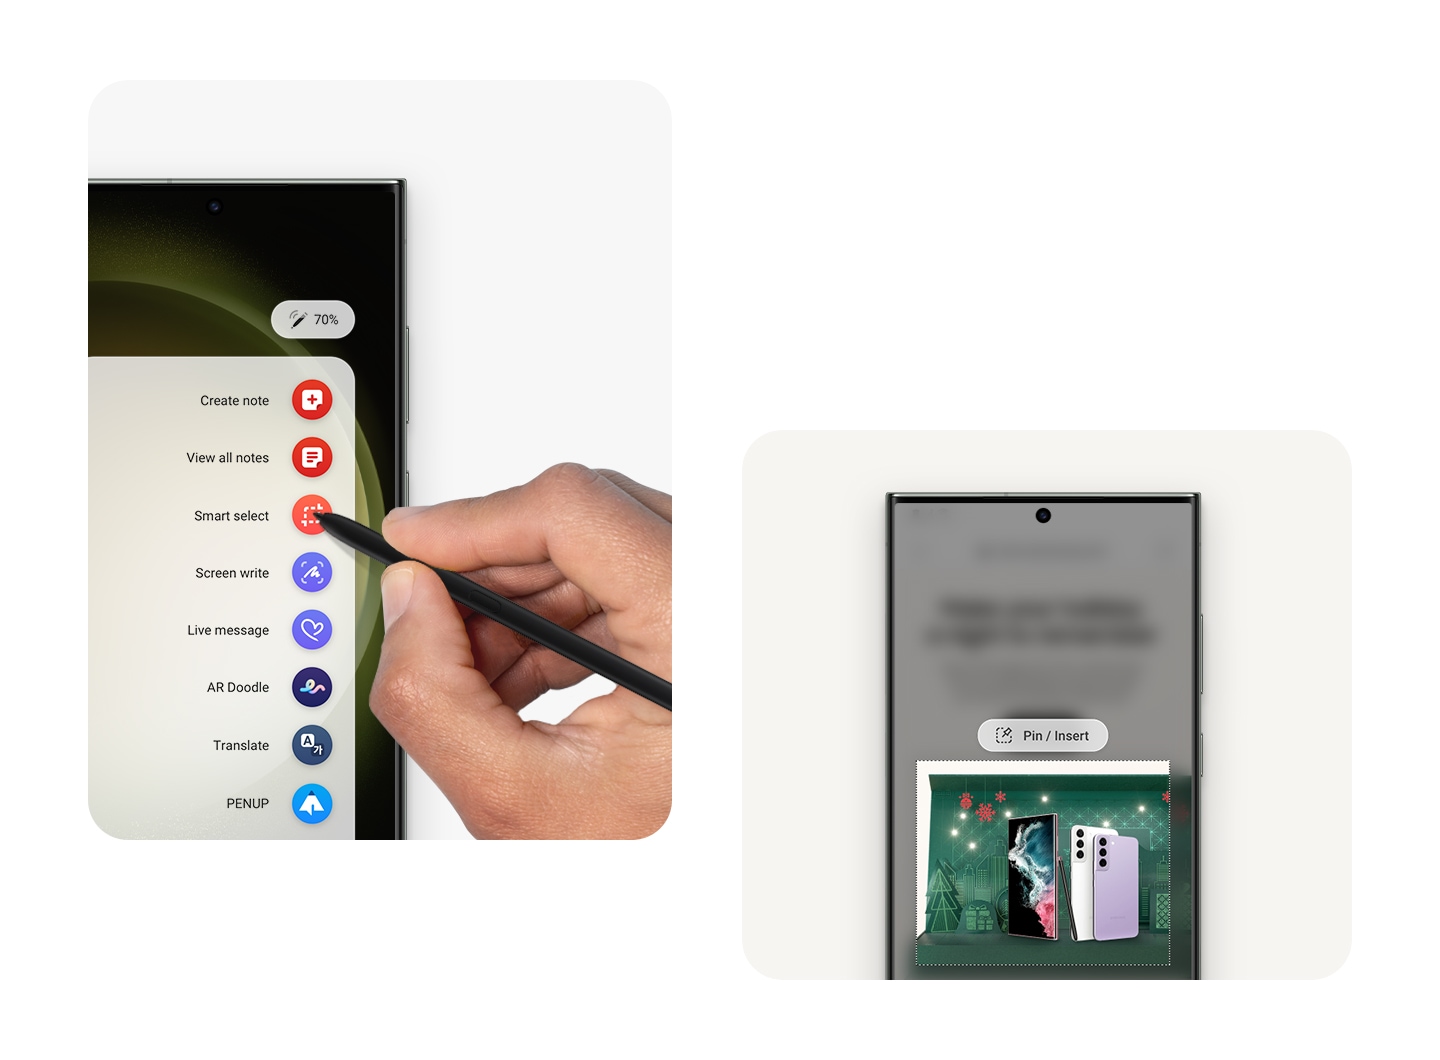 Bir ekranda çeşitli S Pen işlevlerinin yer aldığı Hava Komutu menüsü gösteriliyor. Başka bir ekranda, Samsung web sayfasının bir kısmı S Pen'in Akıllı Seçim işleviyle kare şeklinde vurgulanıyor.